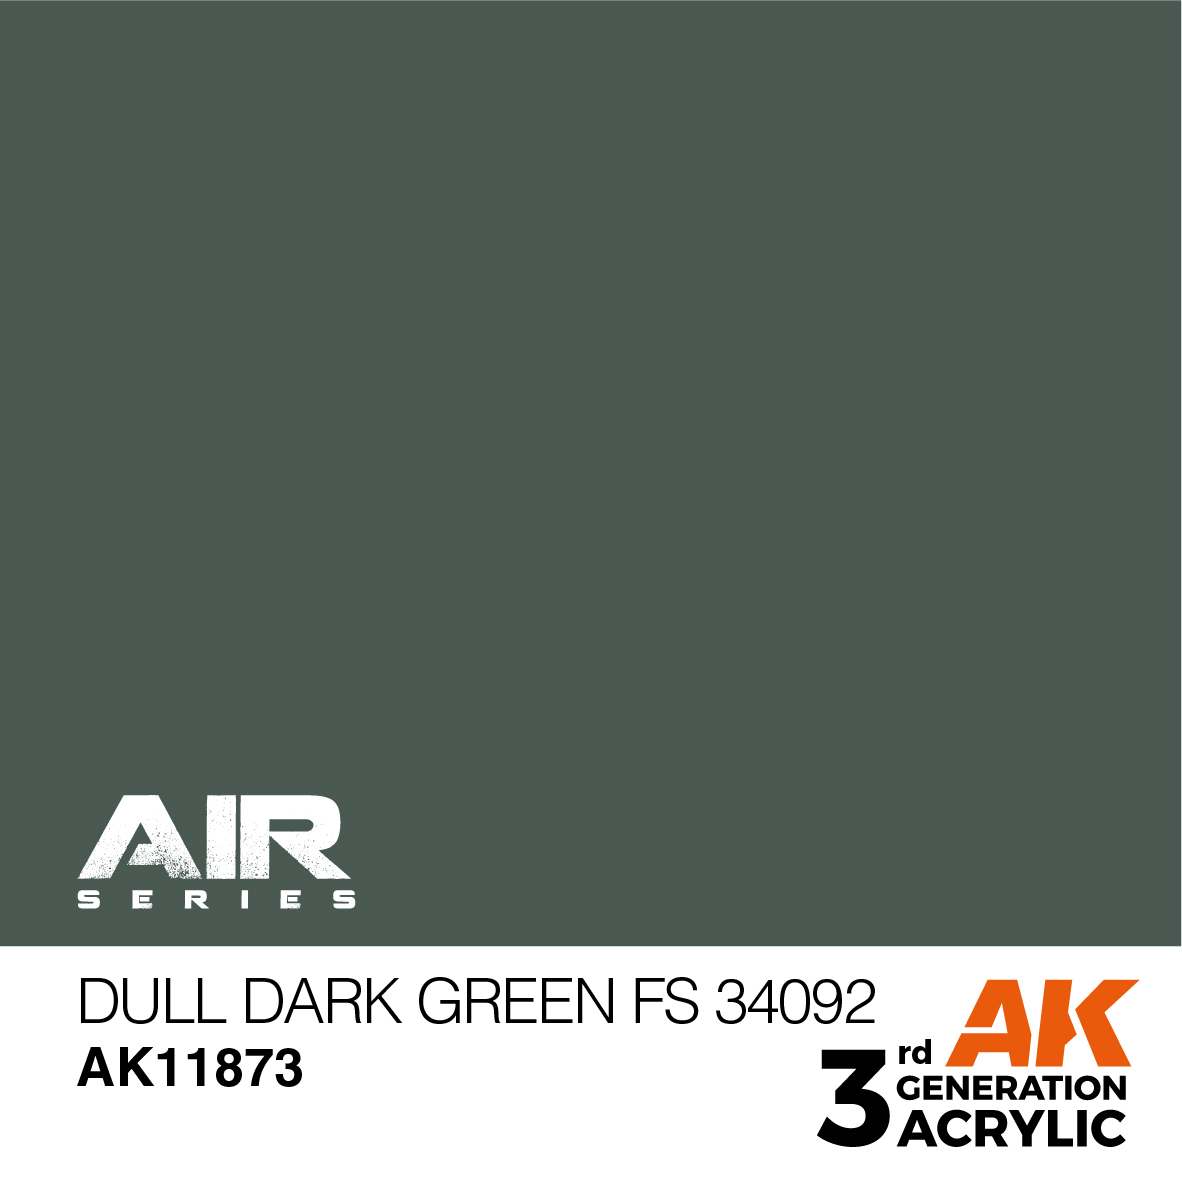 Buy Dull Dark Green FS 34092 - AIR online for2,75€